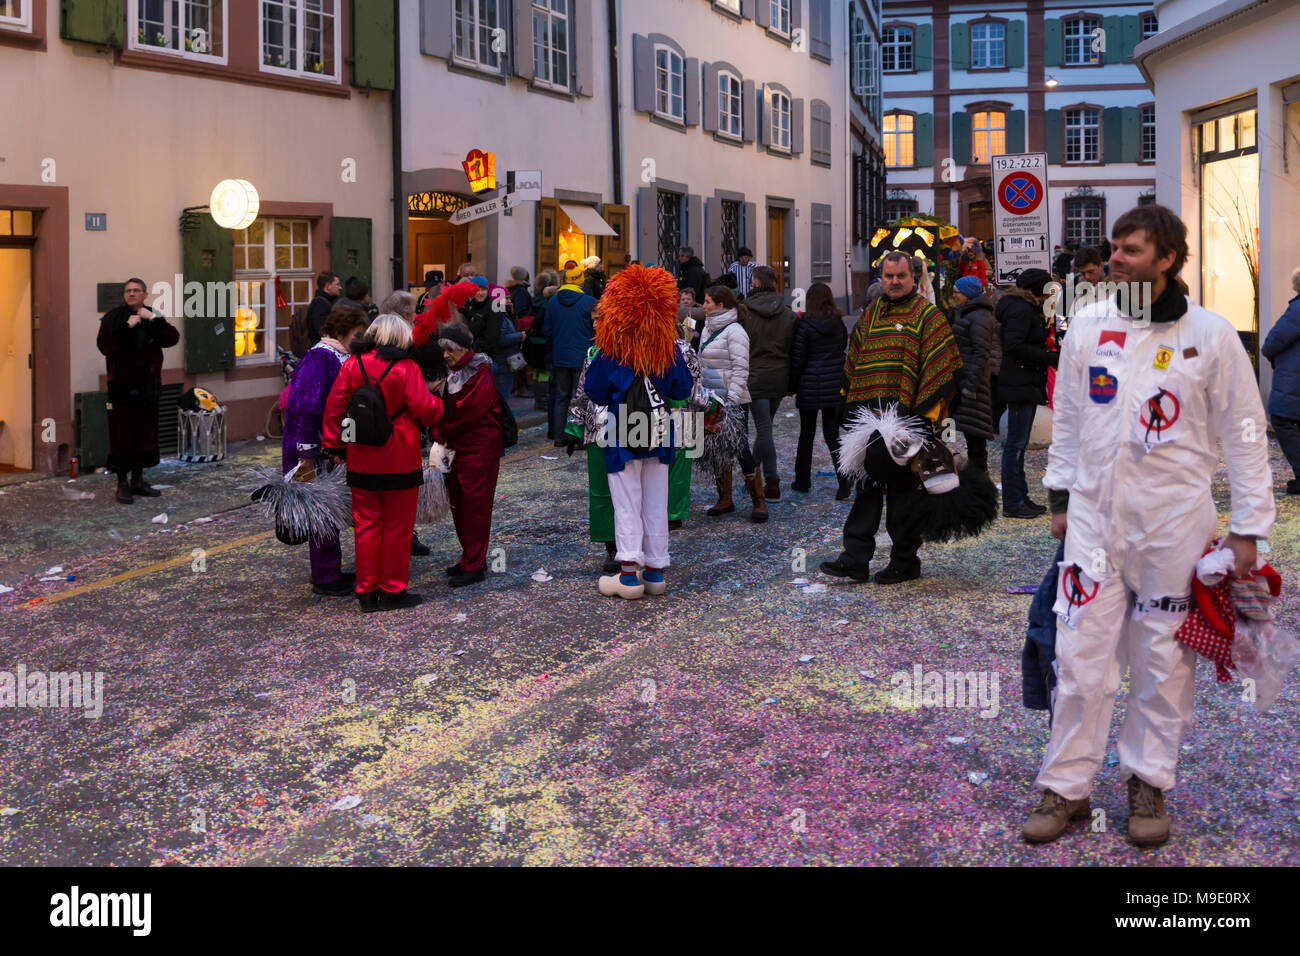 Baeumleingasse, Bâle, Suisse - 20 février 2018. Carnaval de Bâle. Carnaval animé la vie dans une rue latérale couverte de confettis colorés Banque D'Images